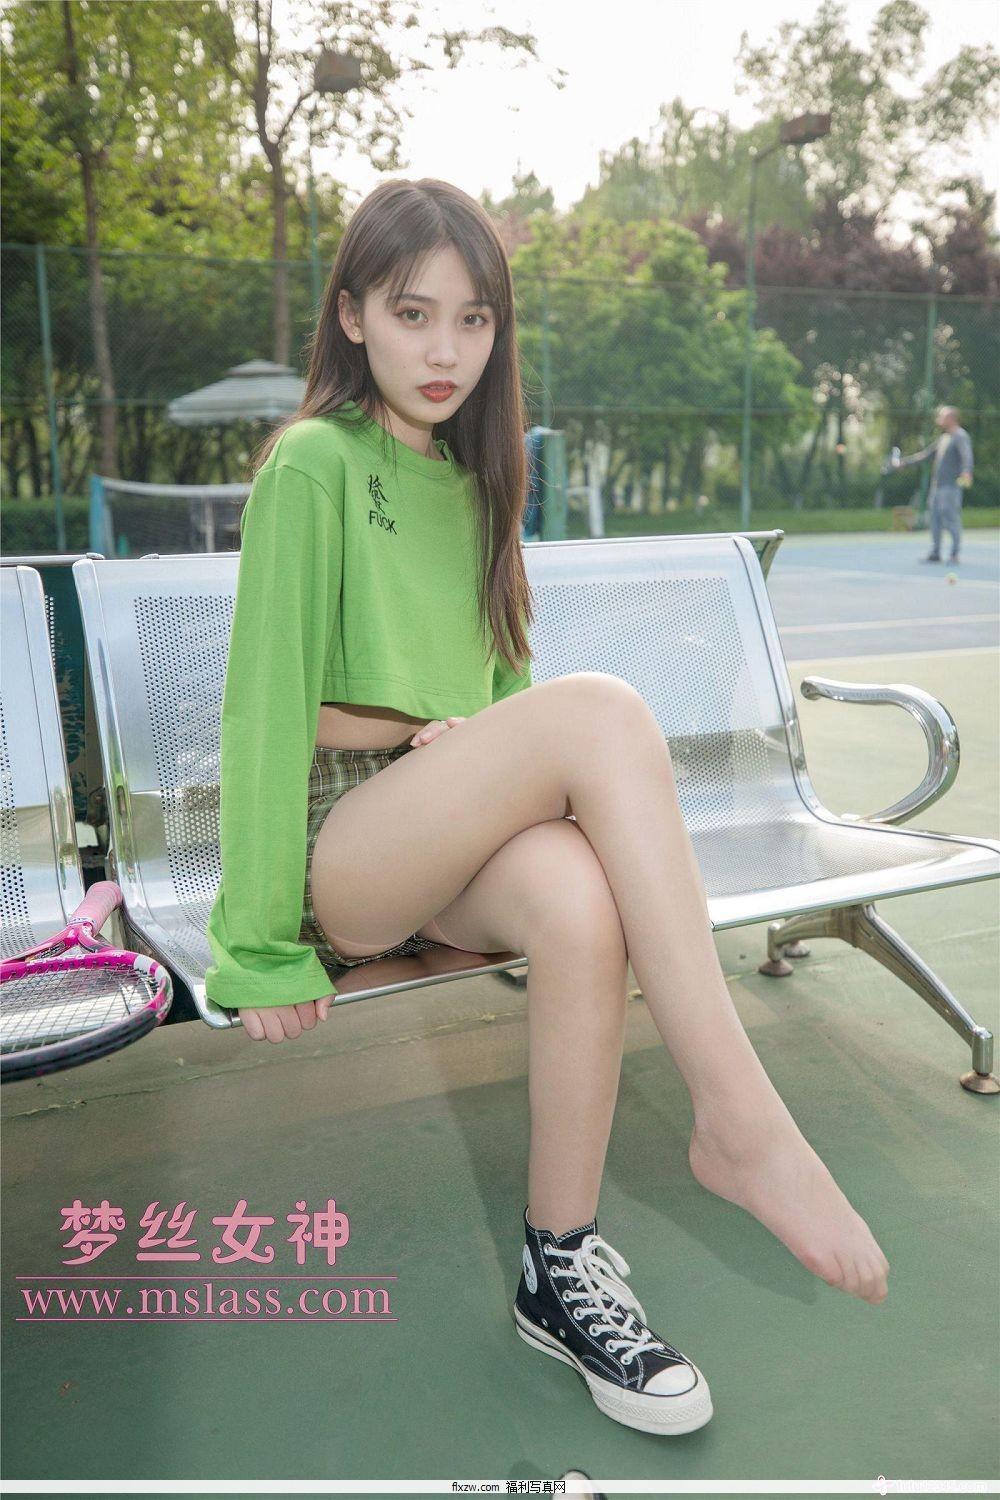 梦丝女神MSLASS - 香萱 网球少女(33)